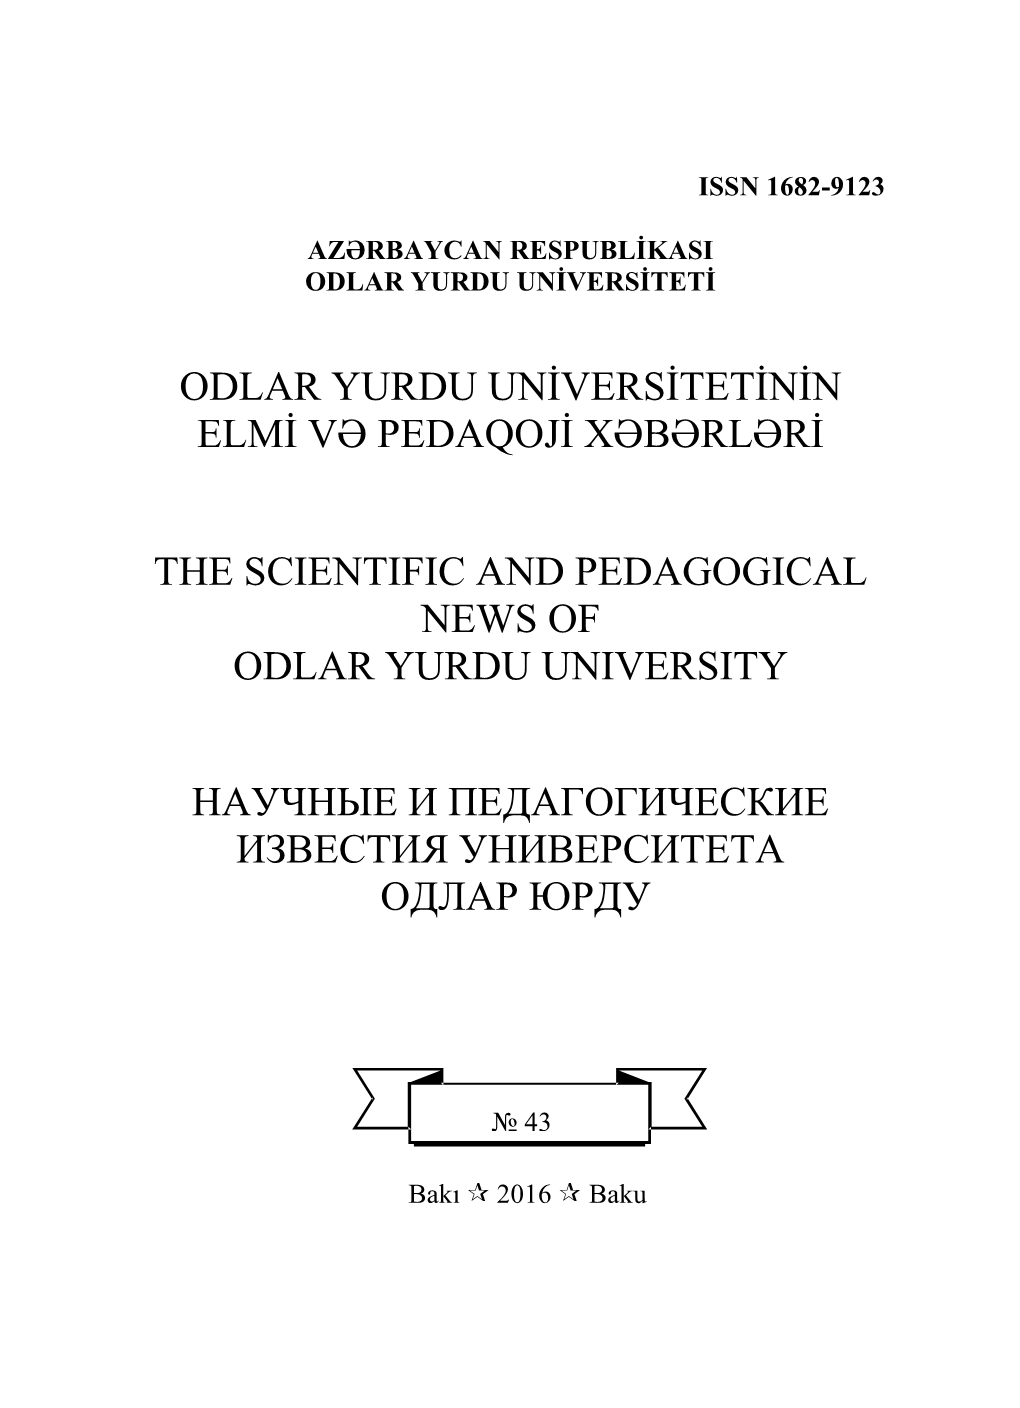 Odlar Yurdu Universitetinin Elmi Və Pedaqoji Xəbərləri the Scientific and Pedagogical News of Odlar Yurdu University